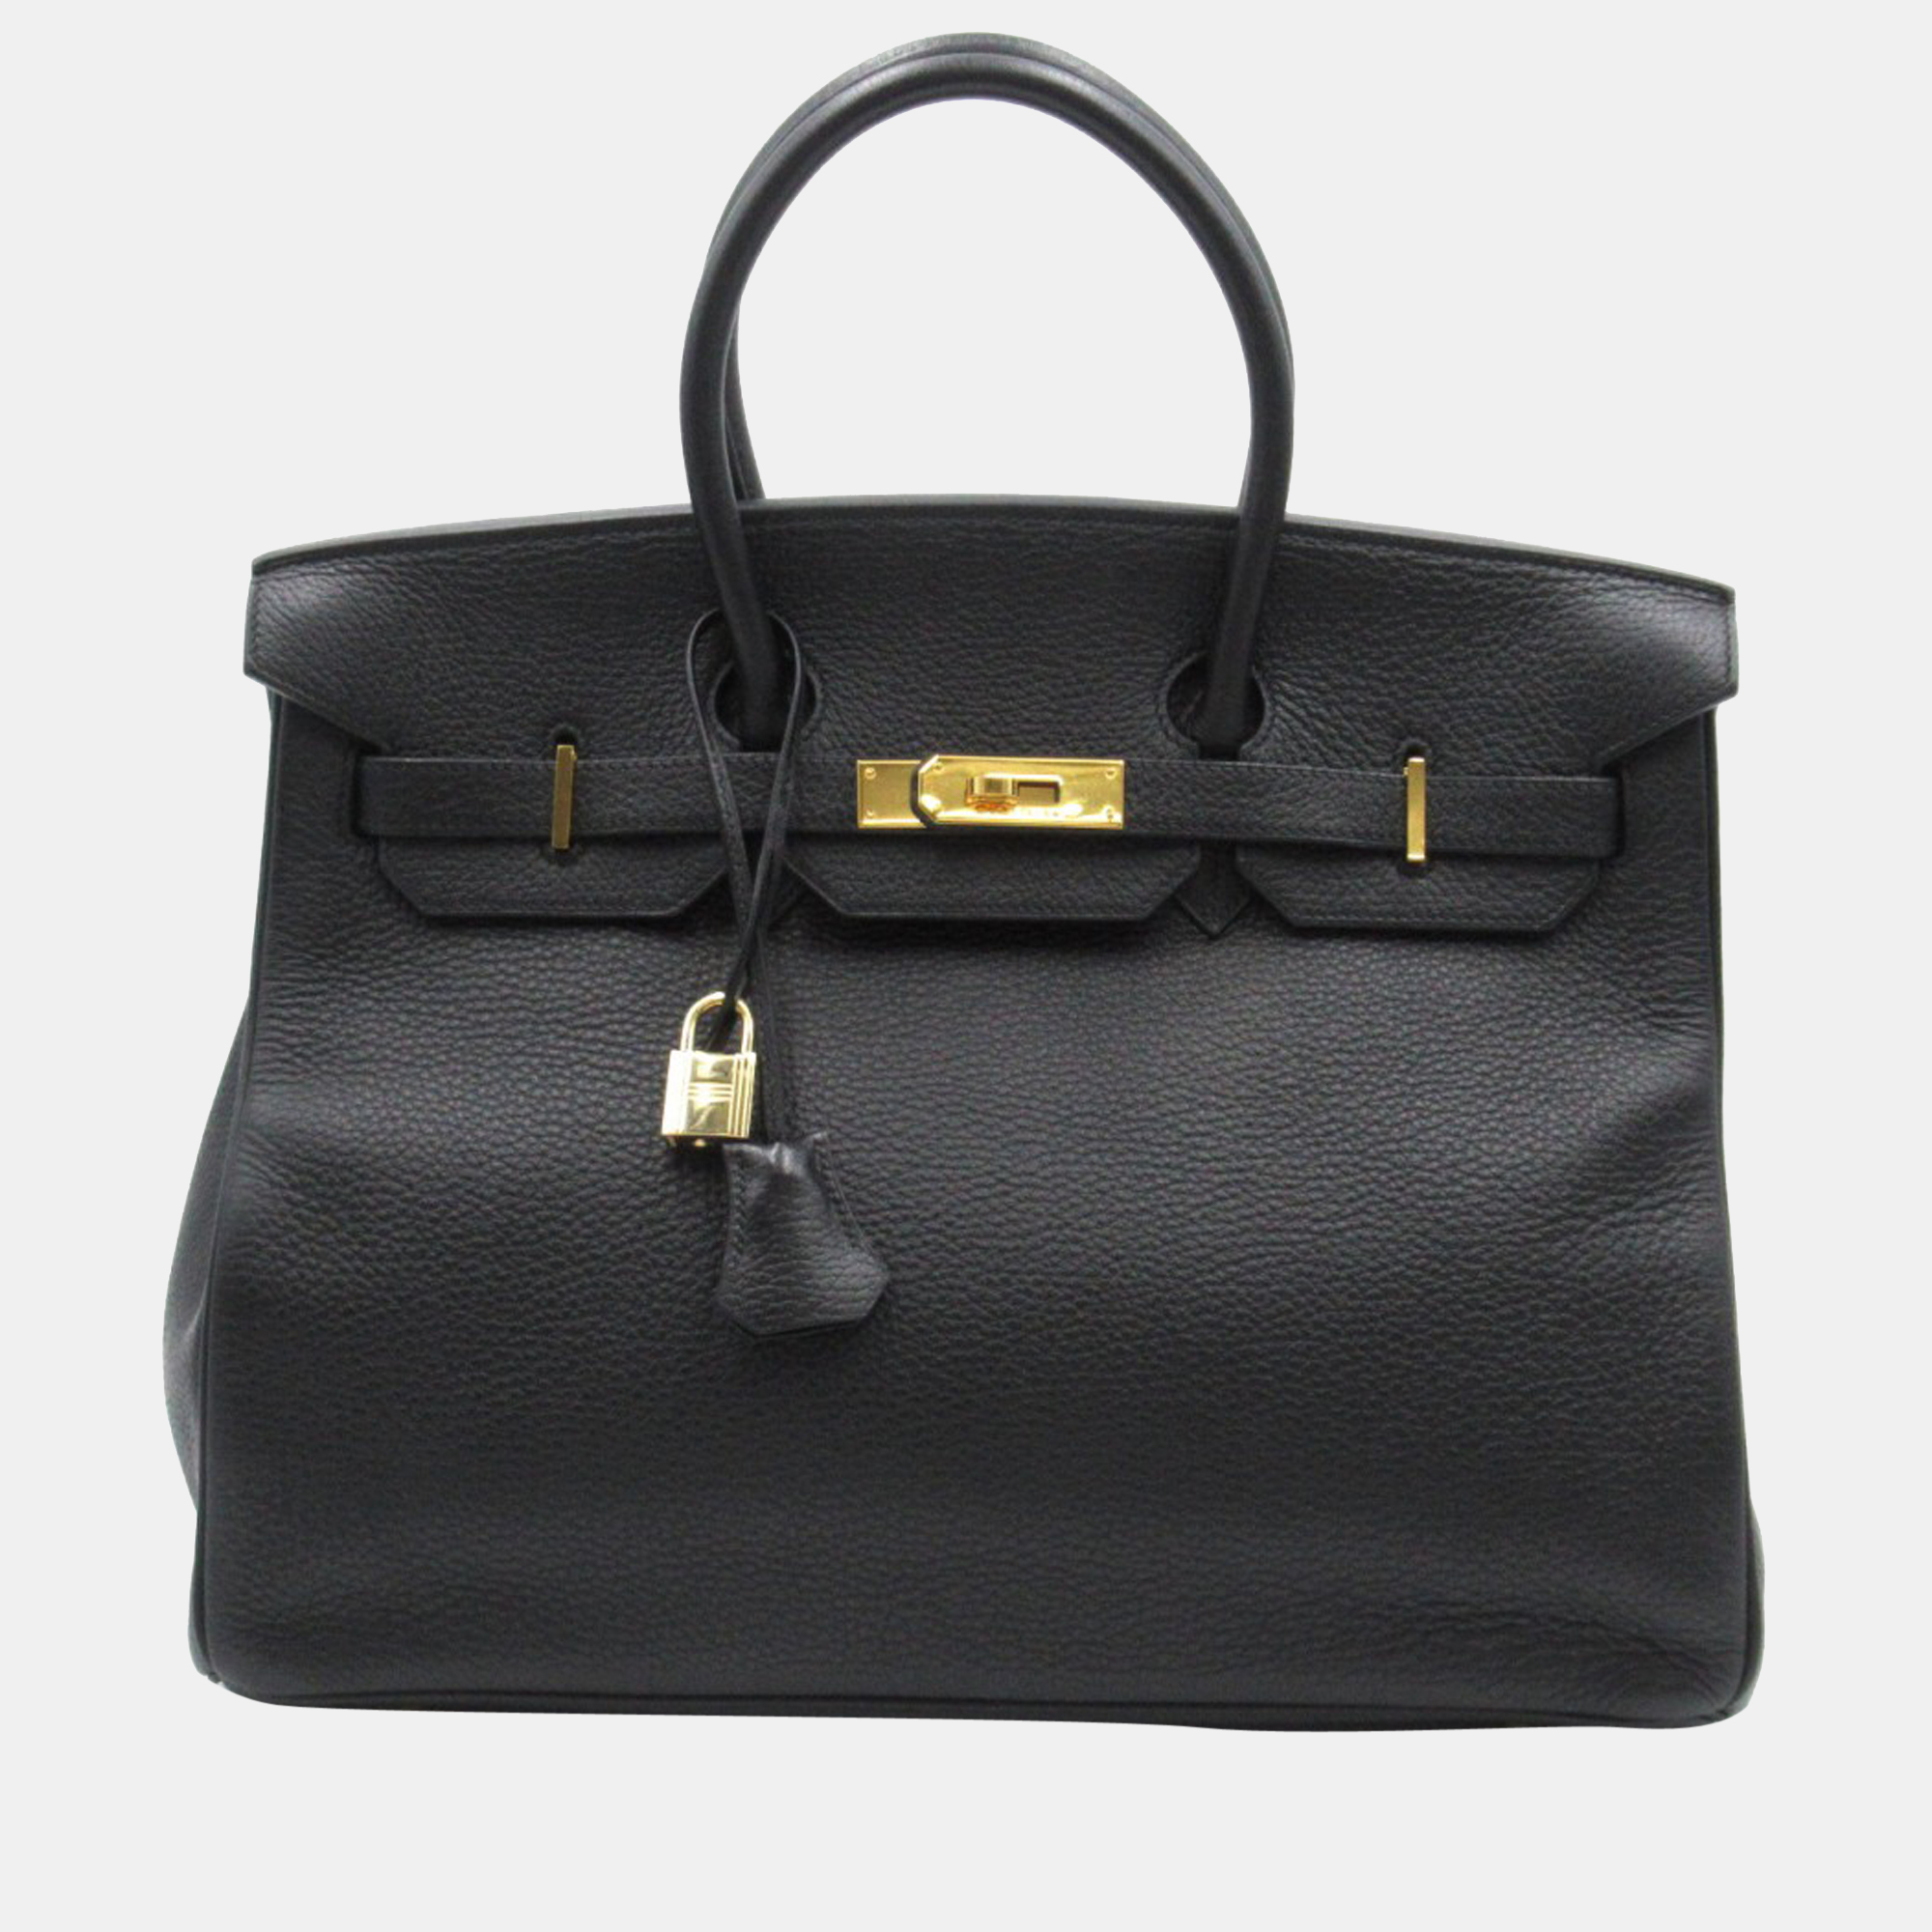 Hermes Black Togo Leather Gold Hardware Birkin 35 Bag